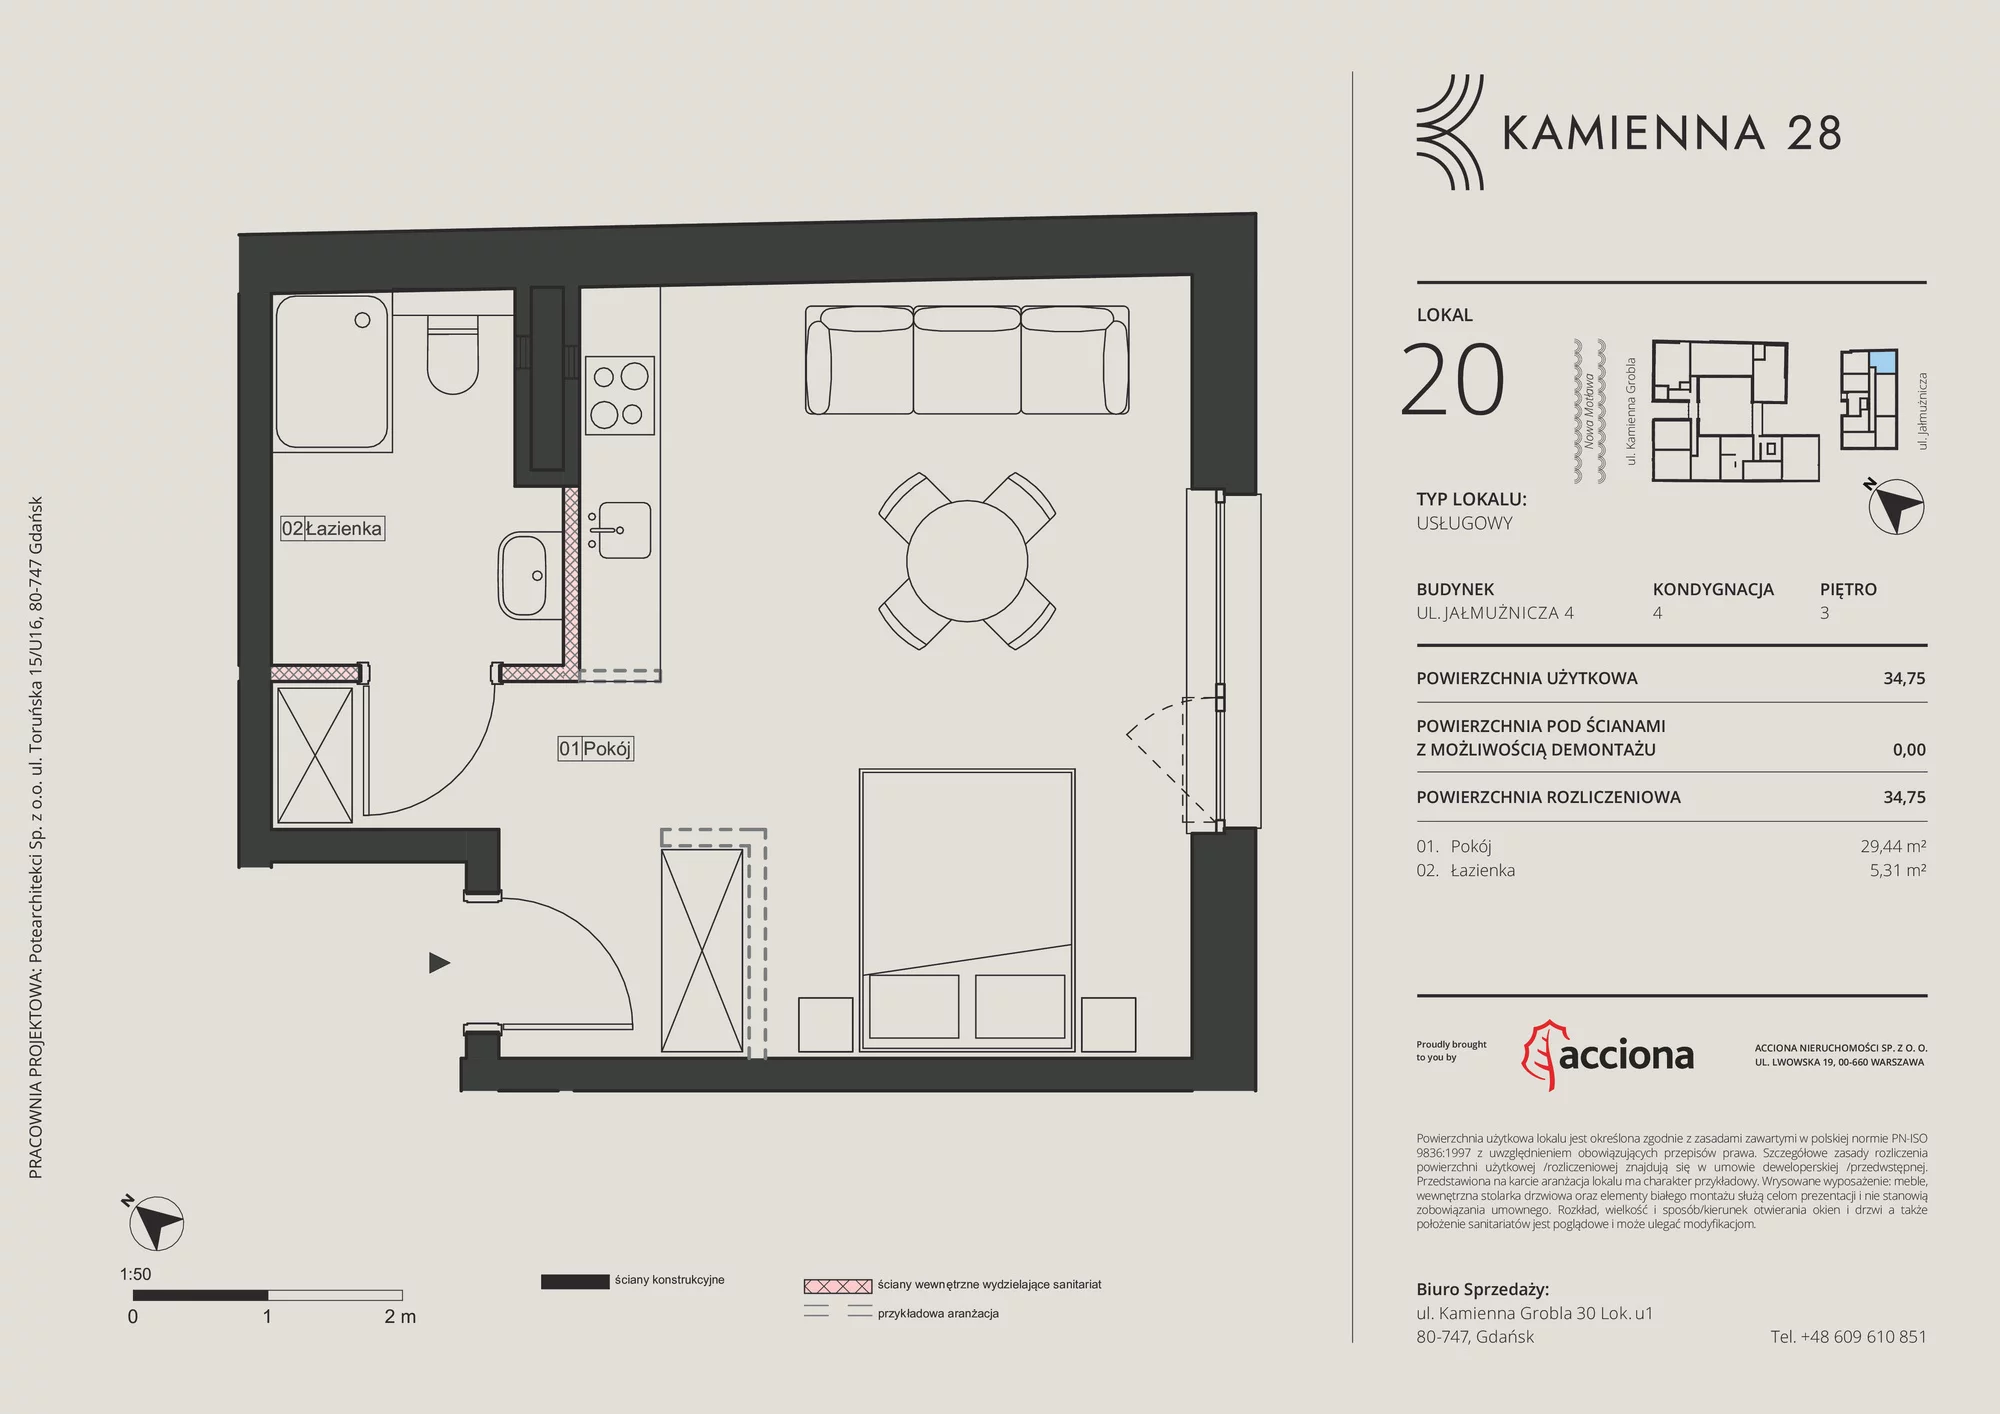 Apartament inwestycyjny 34,75 m², piętro 3, oferta nr 4.20, Kamienna 28 - apartamenty inwestycyjne, Gdańsk, Śródmieście, Dolne Miasto, ul. Jałmużnicza 4